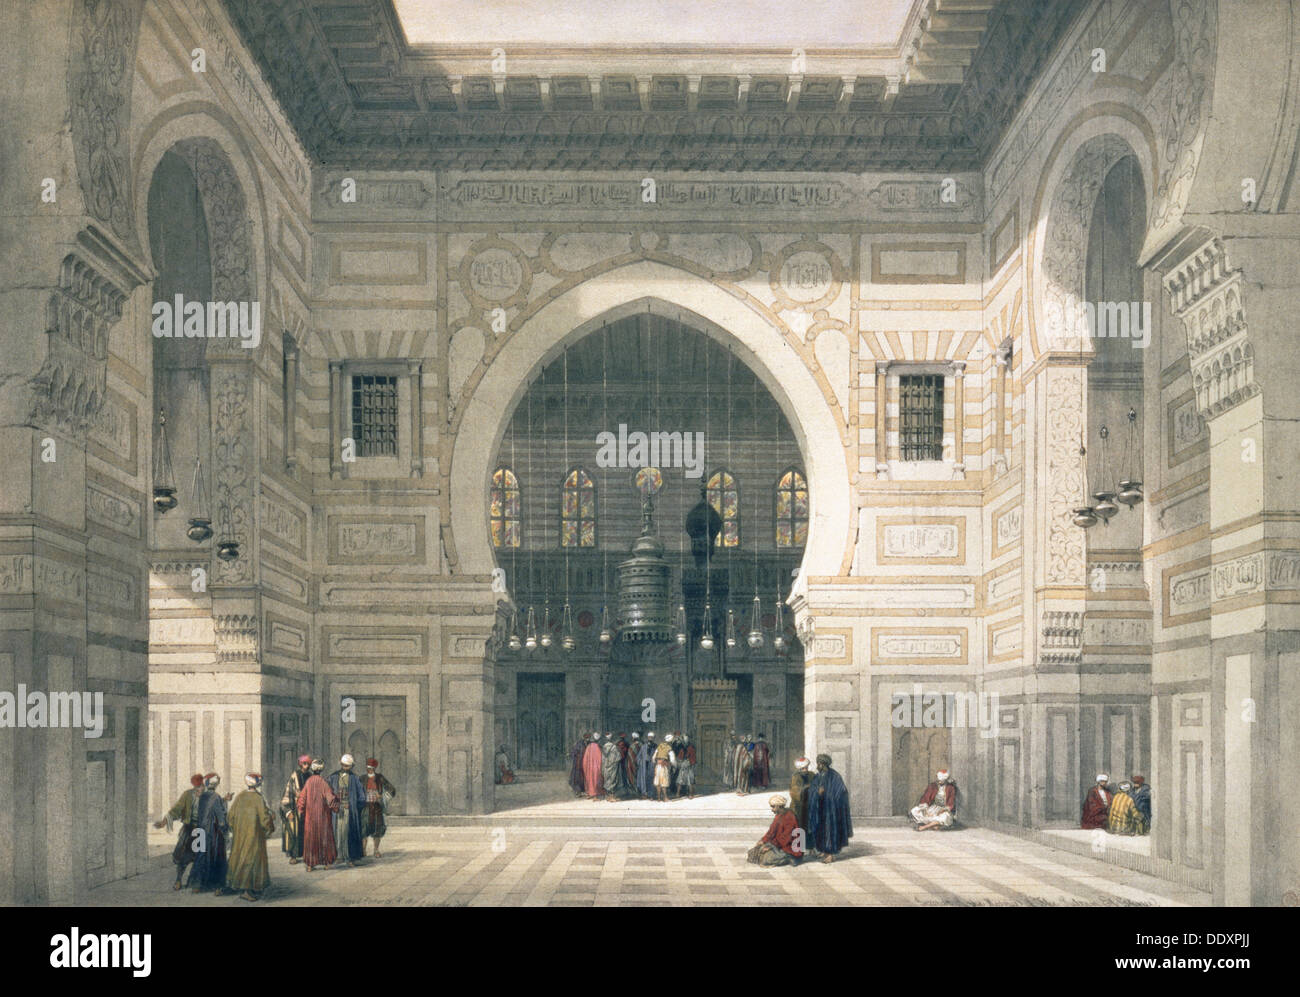 Interno della moschea del sultano Hassan al Cairo, Egitto, xix secolo. Artista: David Roberts Foto Stock